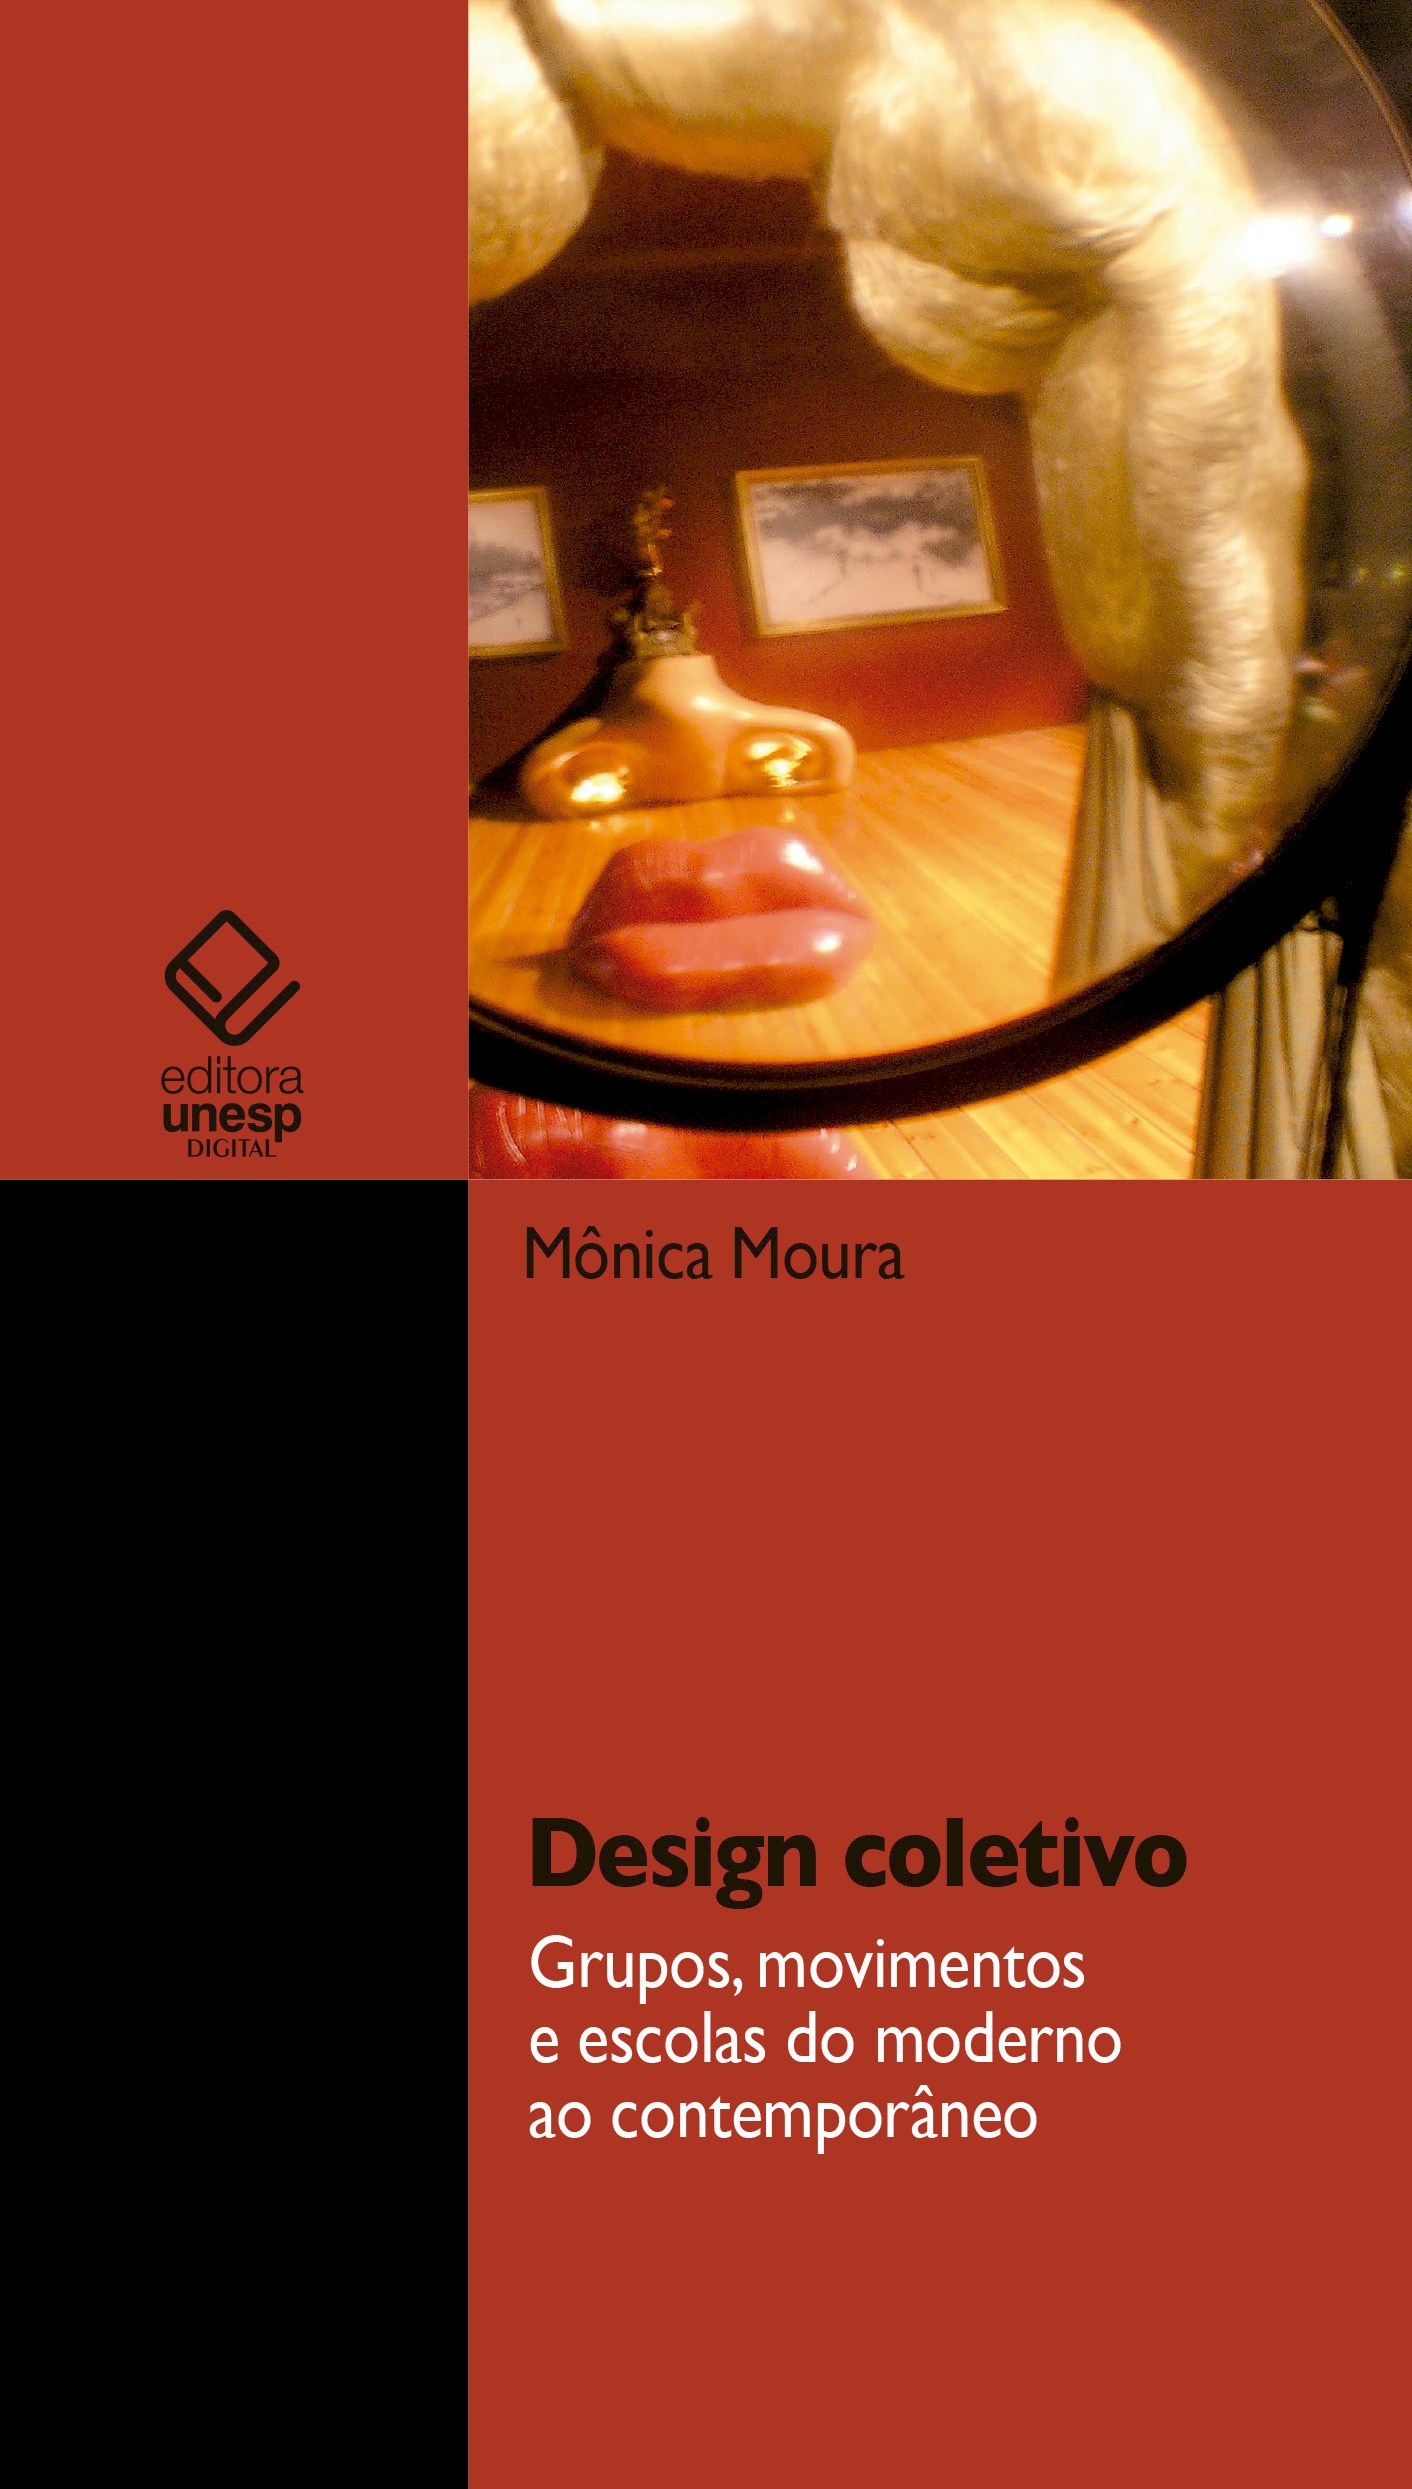 Moura Design